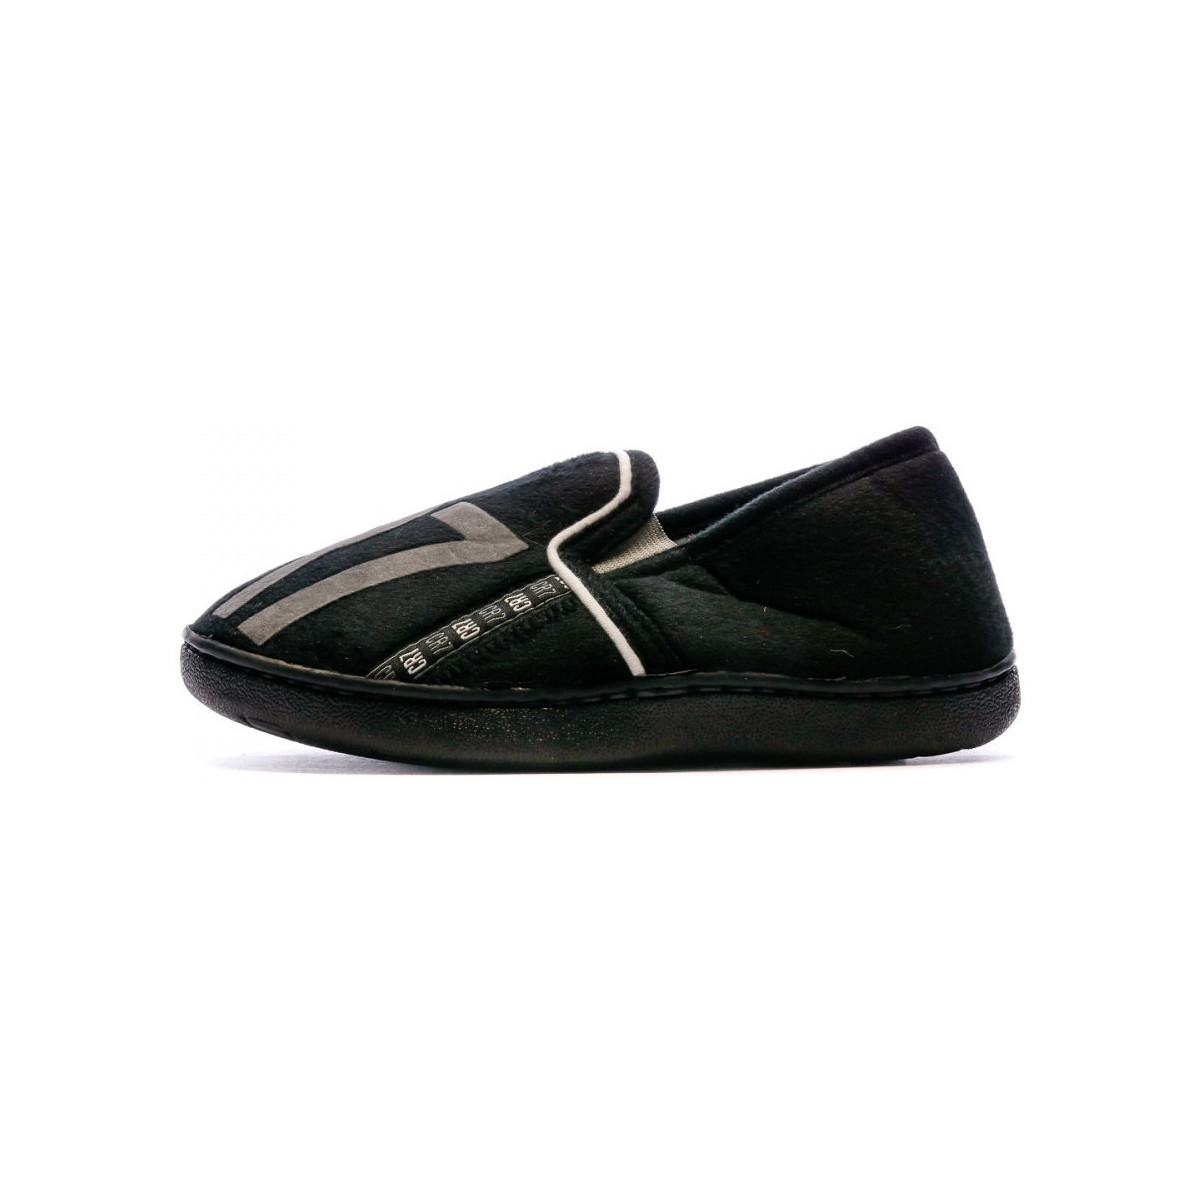 Chaussures Garçon New Balance Nume 761351-30 Noir